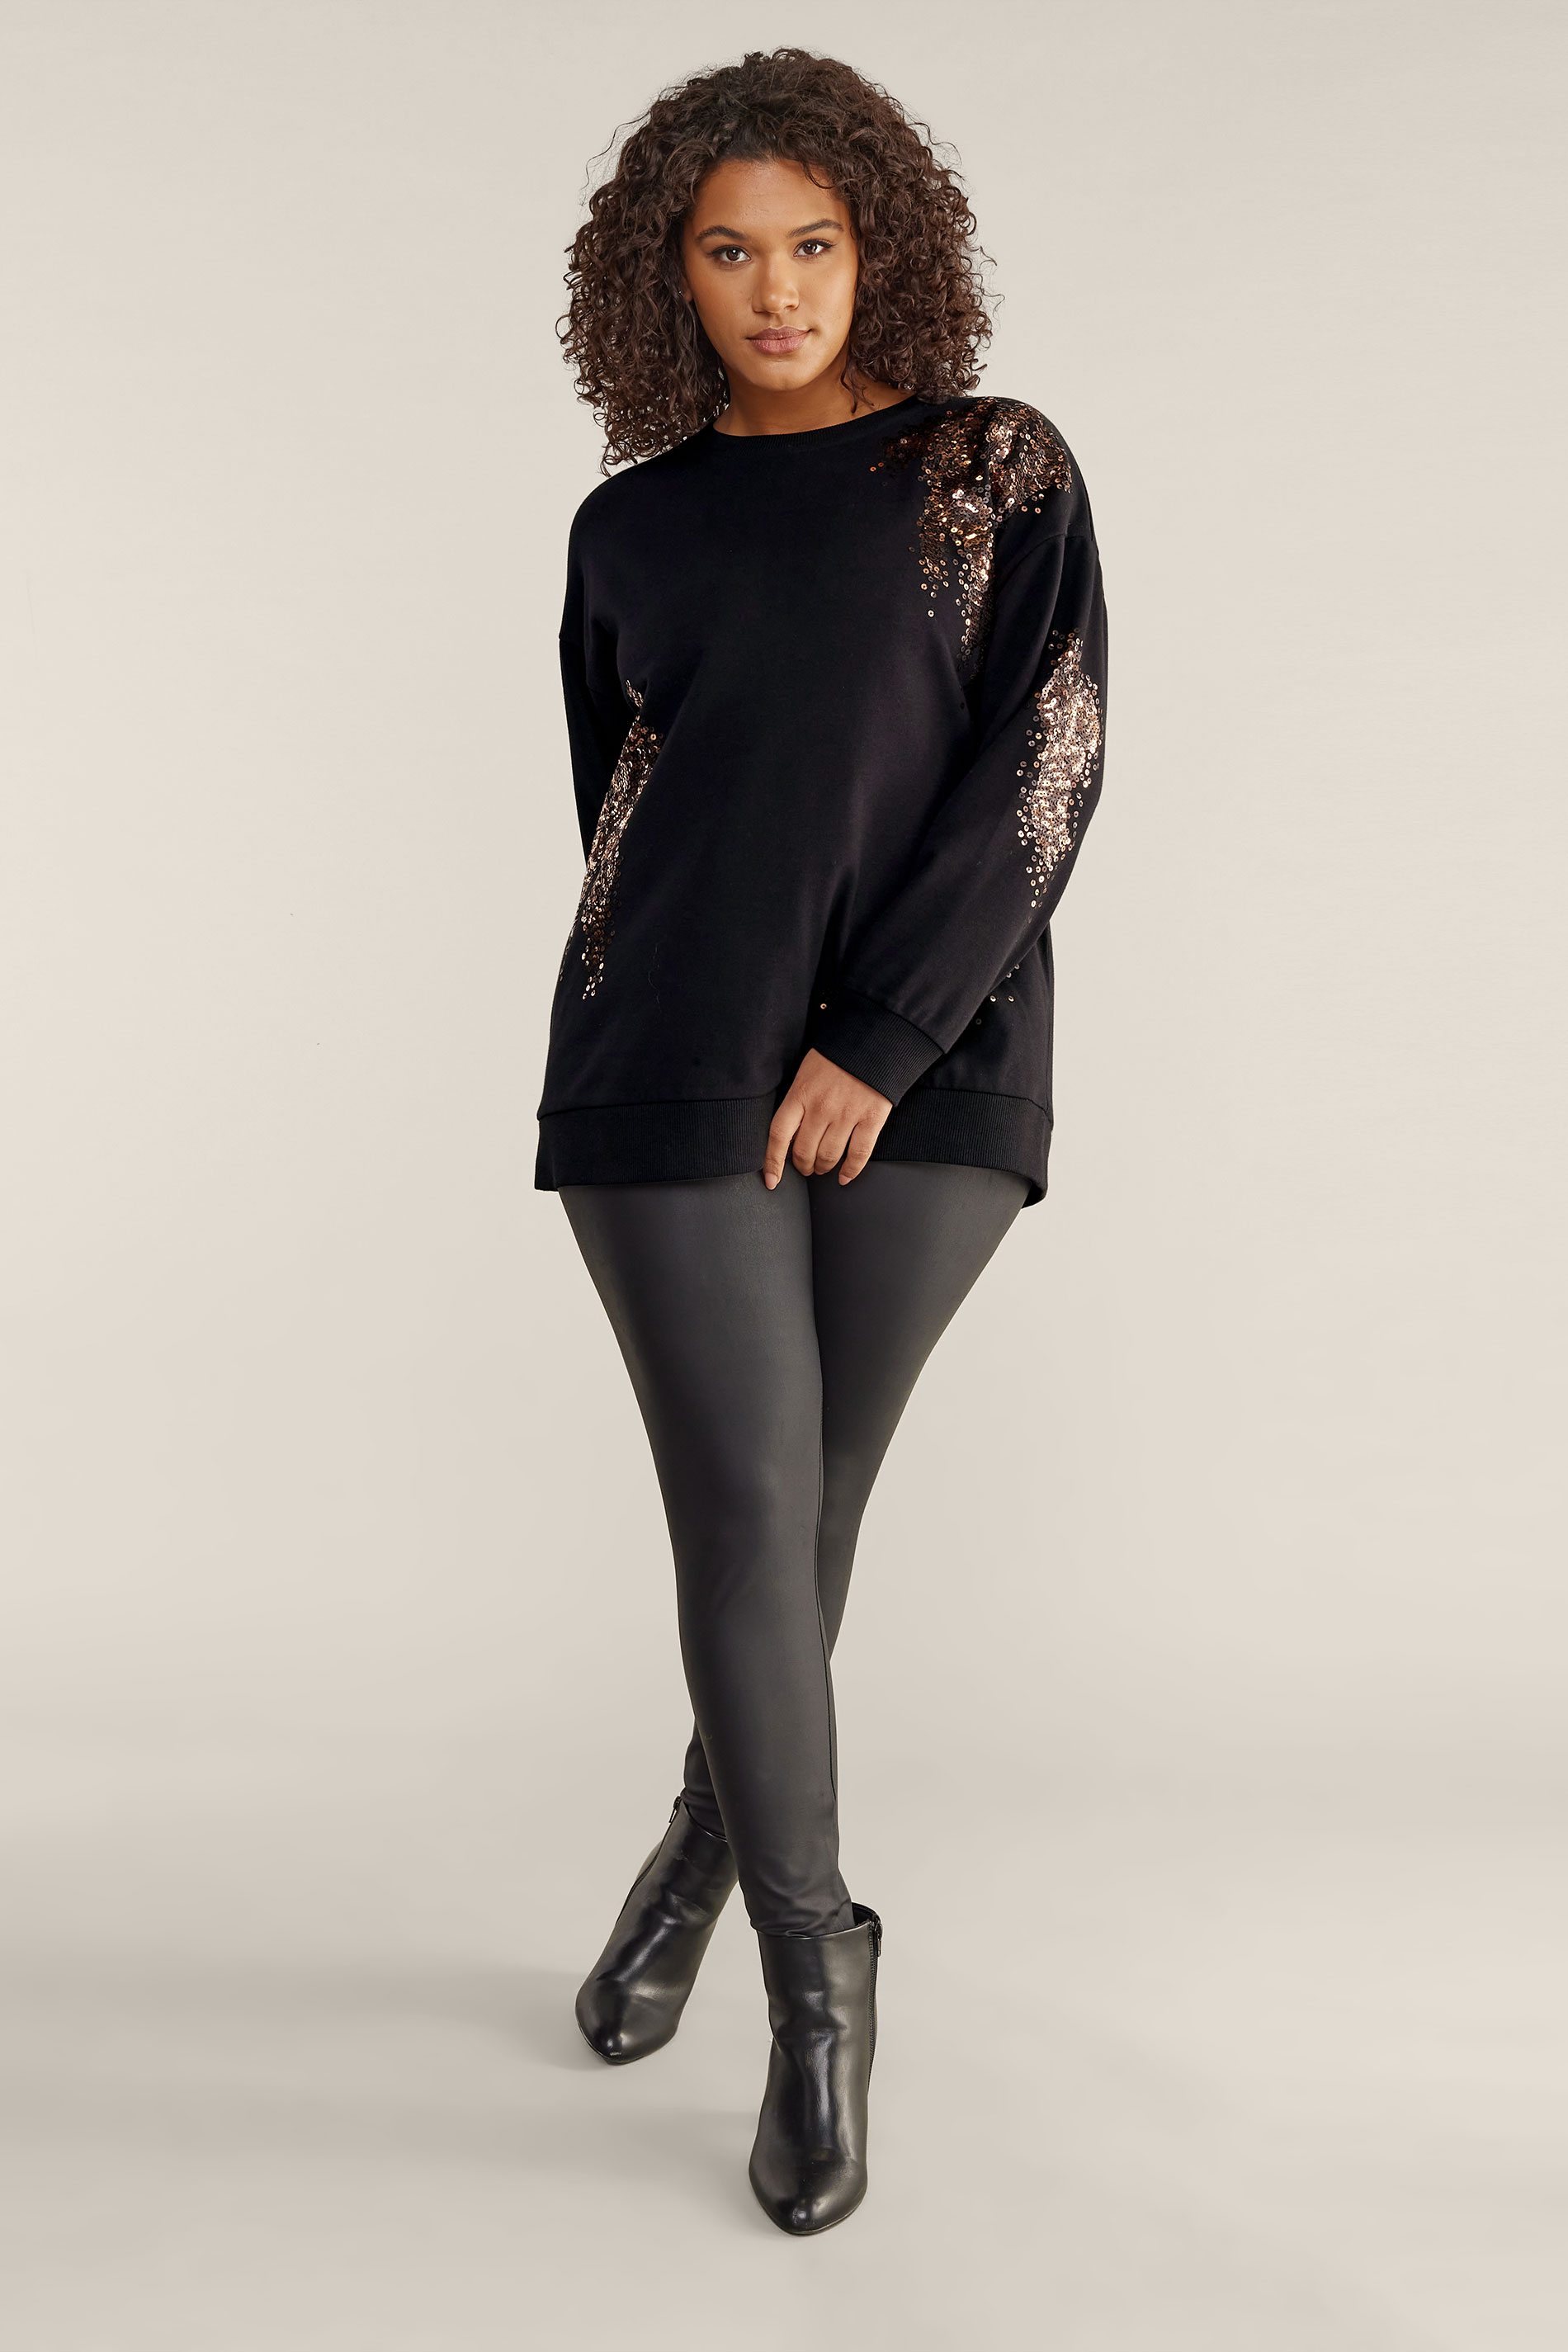 EVANS Plus Size Black & Bronze Sequin Sweatshirt | Evans 2